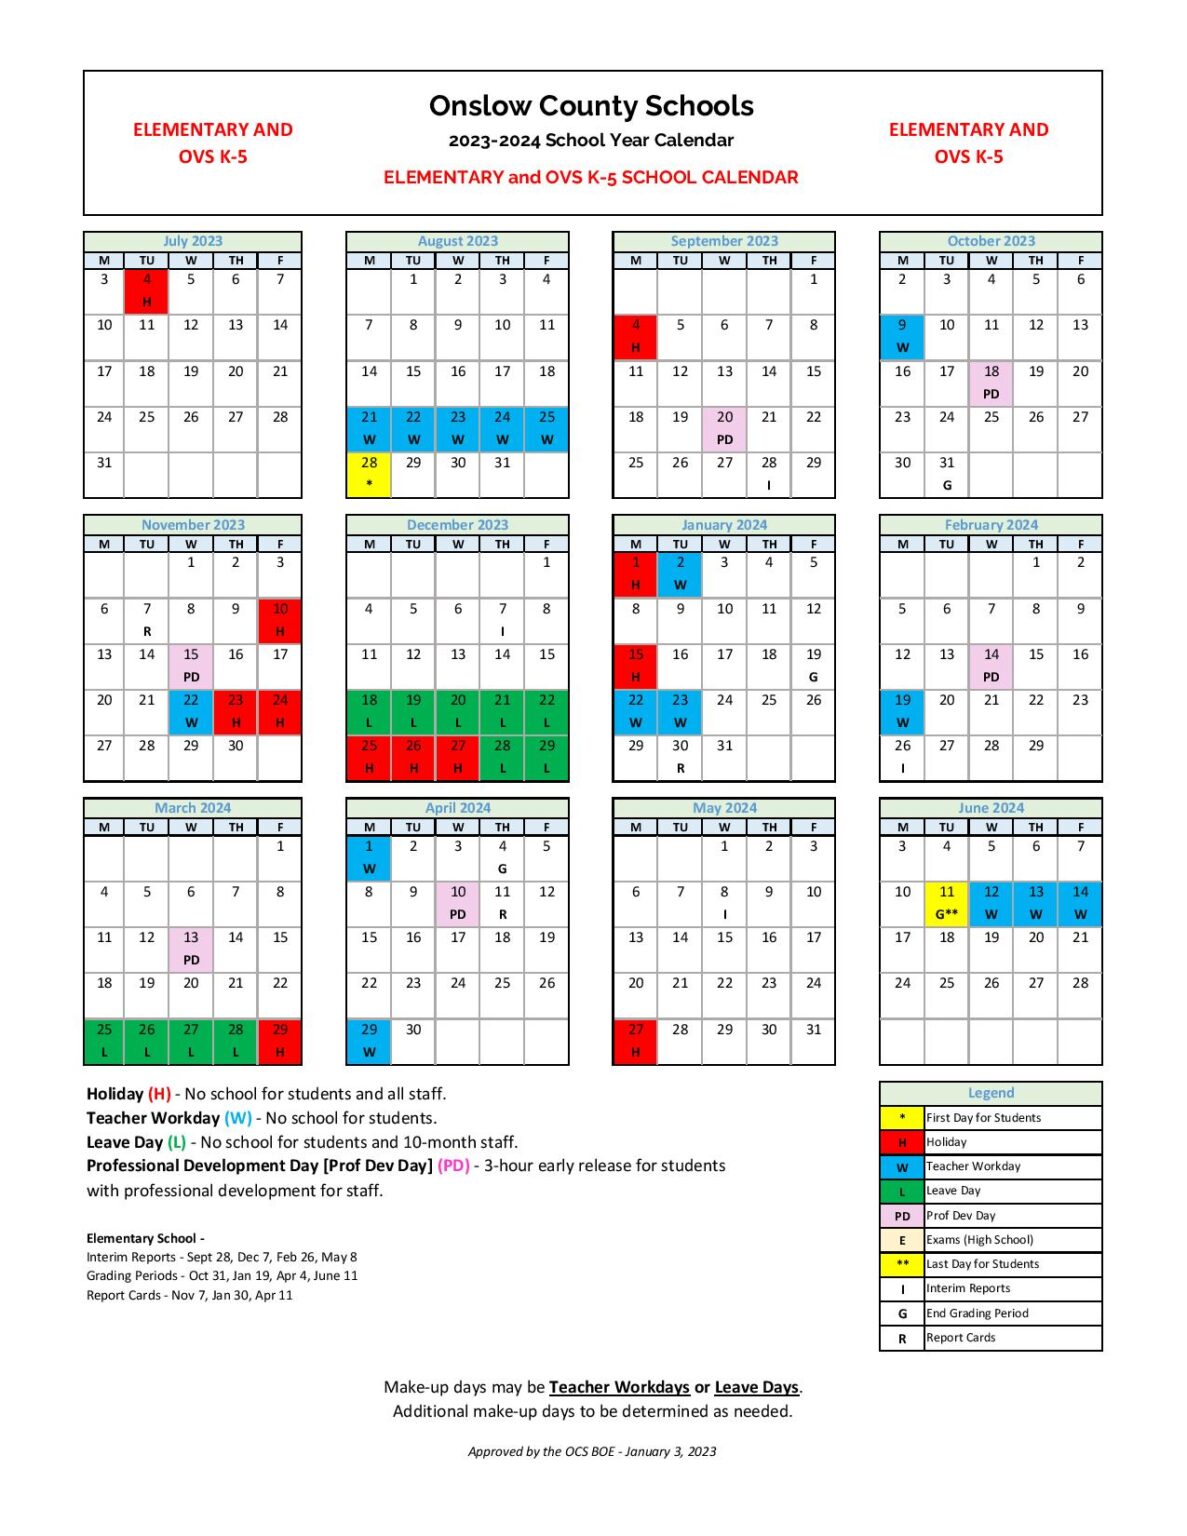 Anderson County School Calendar 202424 gay marcelle